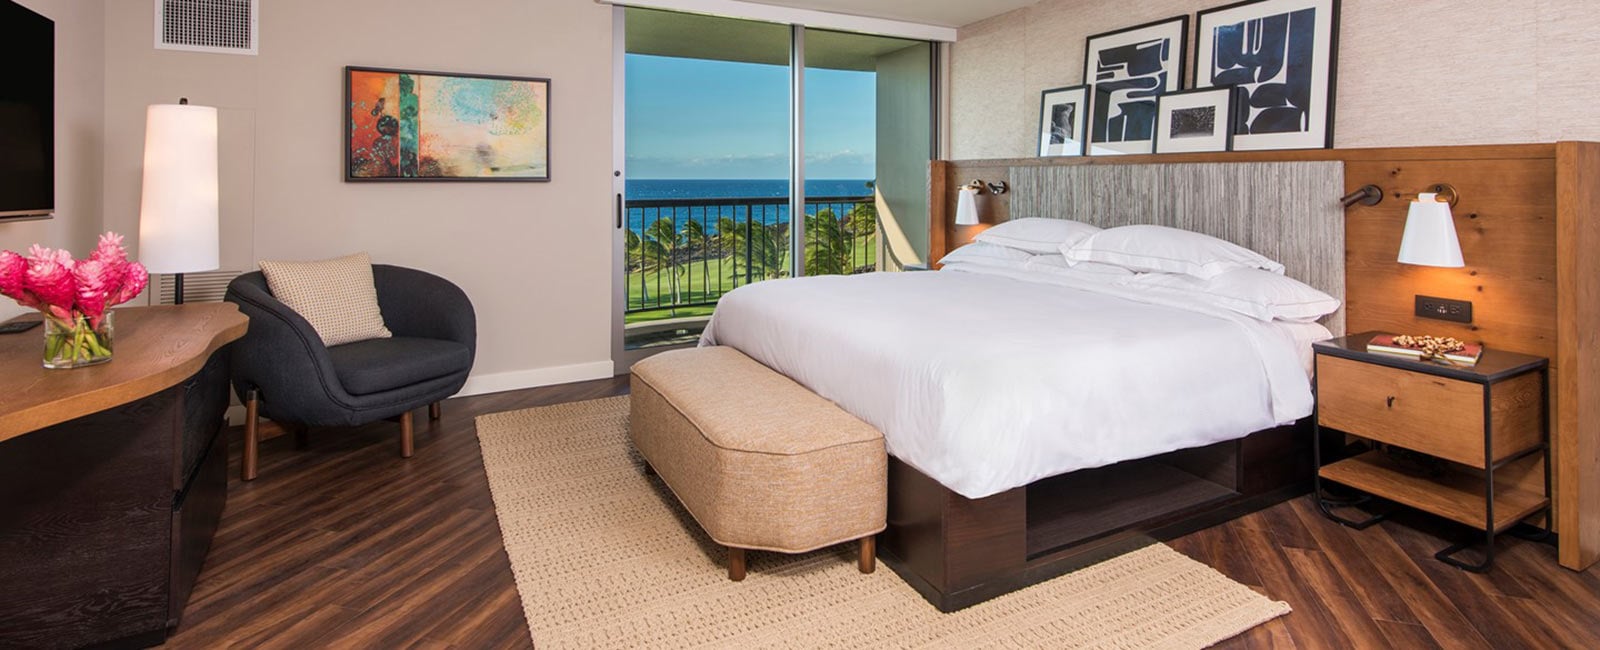 Bedroom at Ocean Tower in Waikoloa, Hawaii